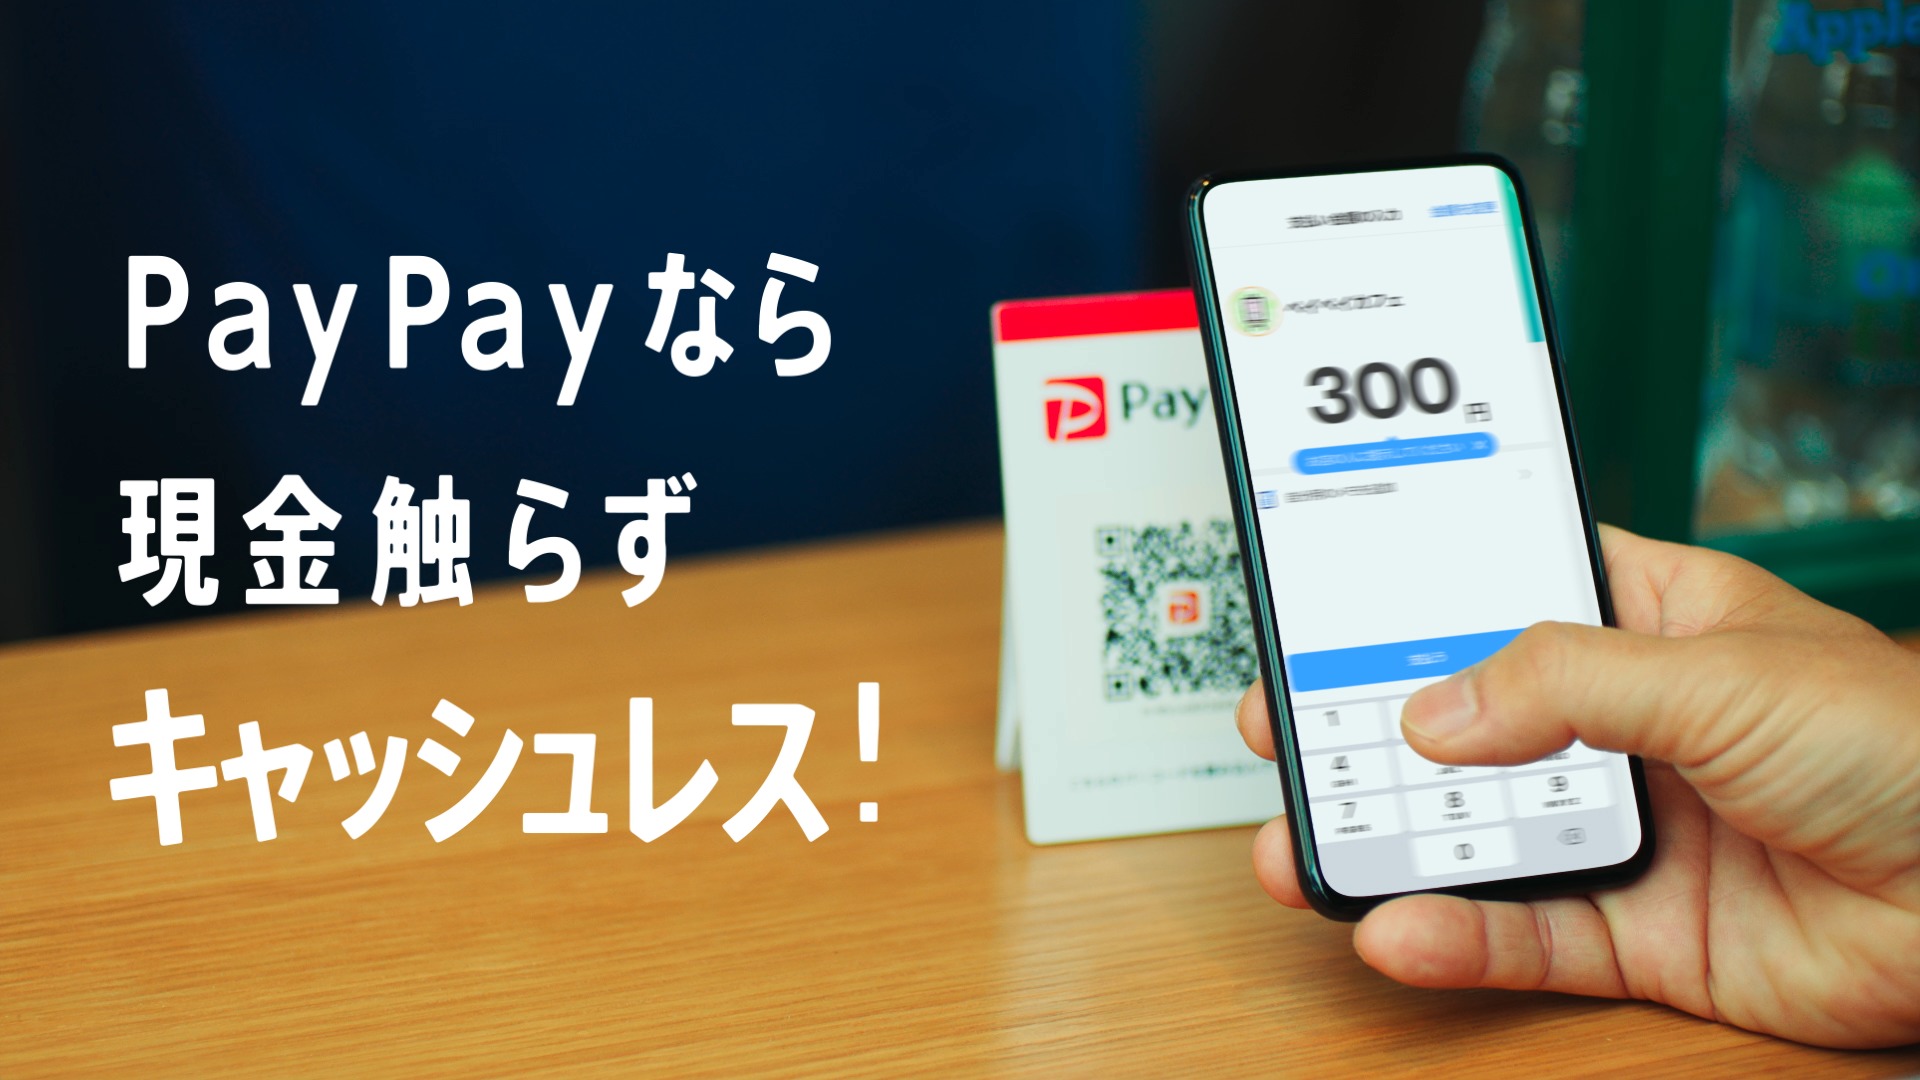 PayPay 「現金触らずキャッシュレス 春」篇 TVCM(モーショングラフィックス)